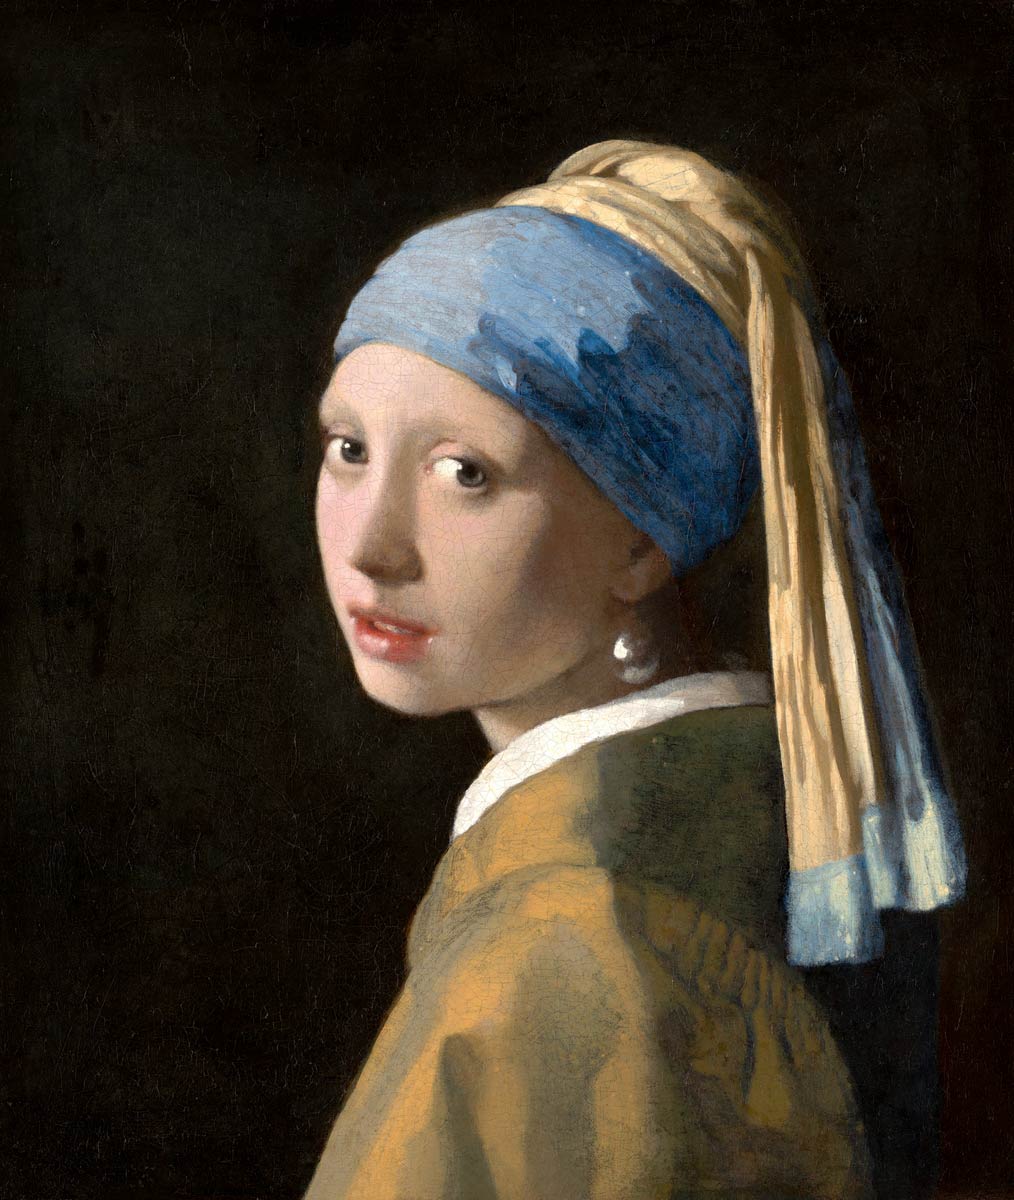 【無料壁紙】ヨハネス・フェルメール「真珠の耳飾りの少女 (1665)」 / Johannes Vermeer_Girl with a Pearl Earring (1665)